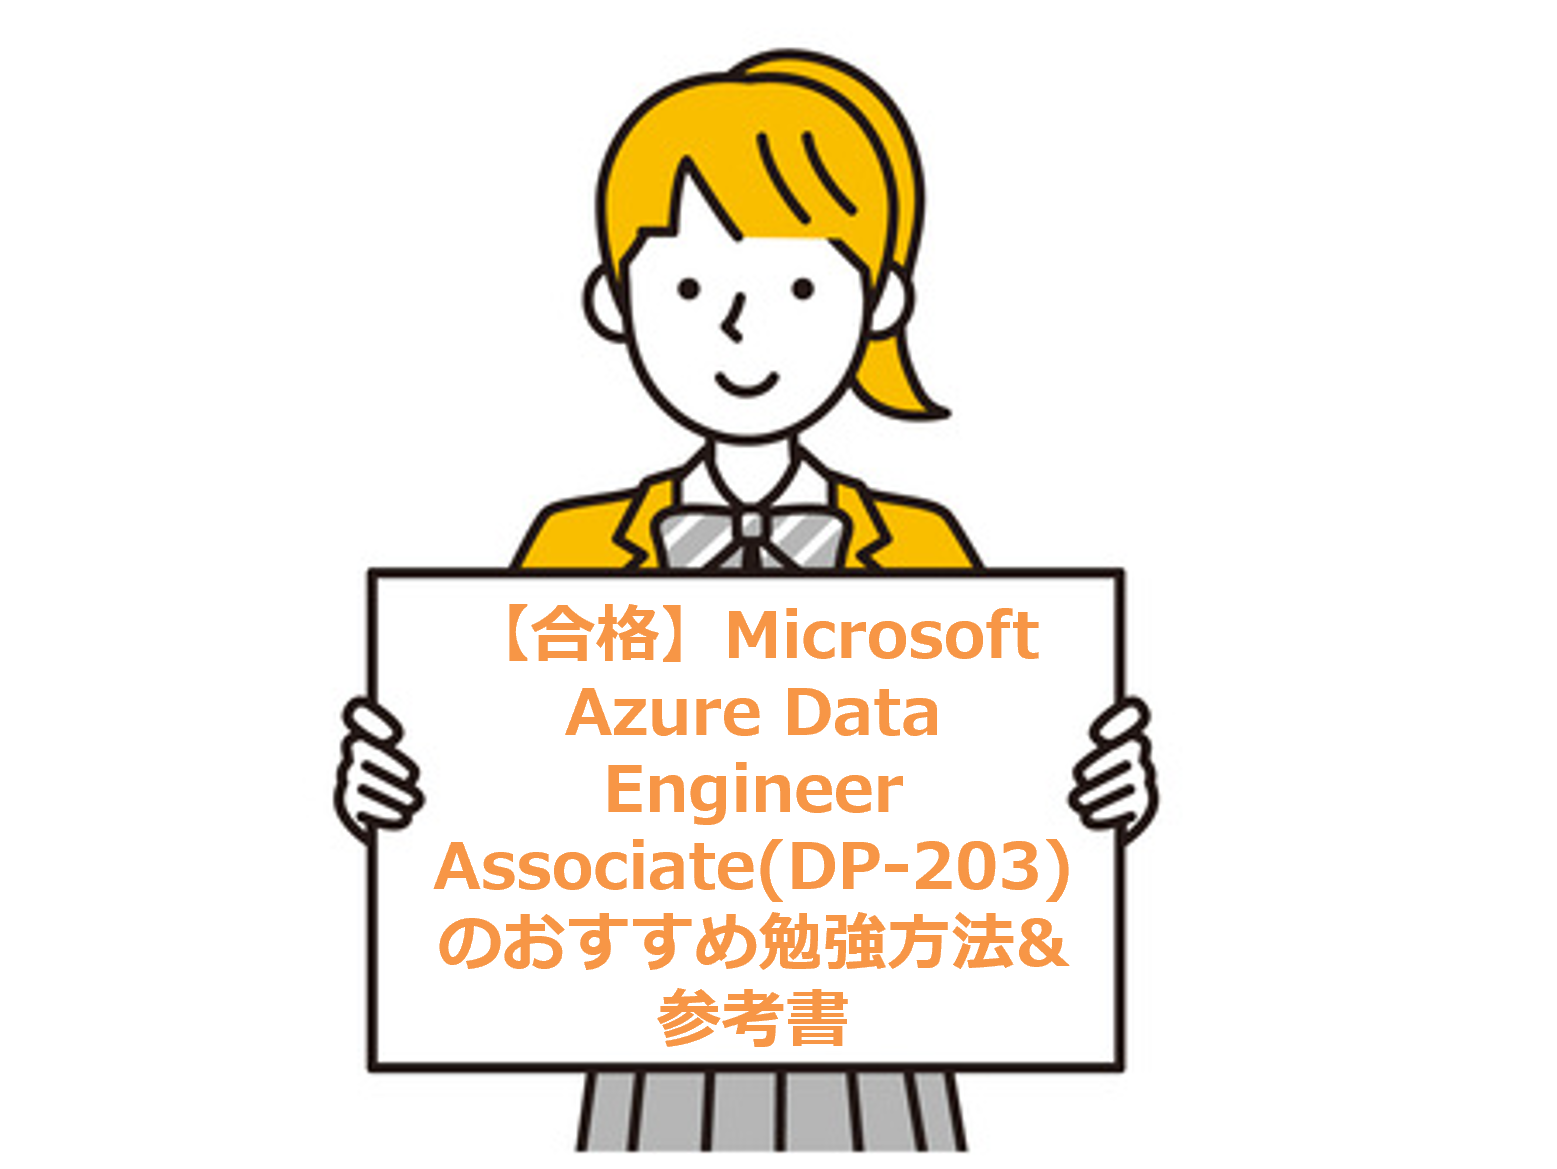 Microsoft Azure Data Engineer Associate(DP-203)